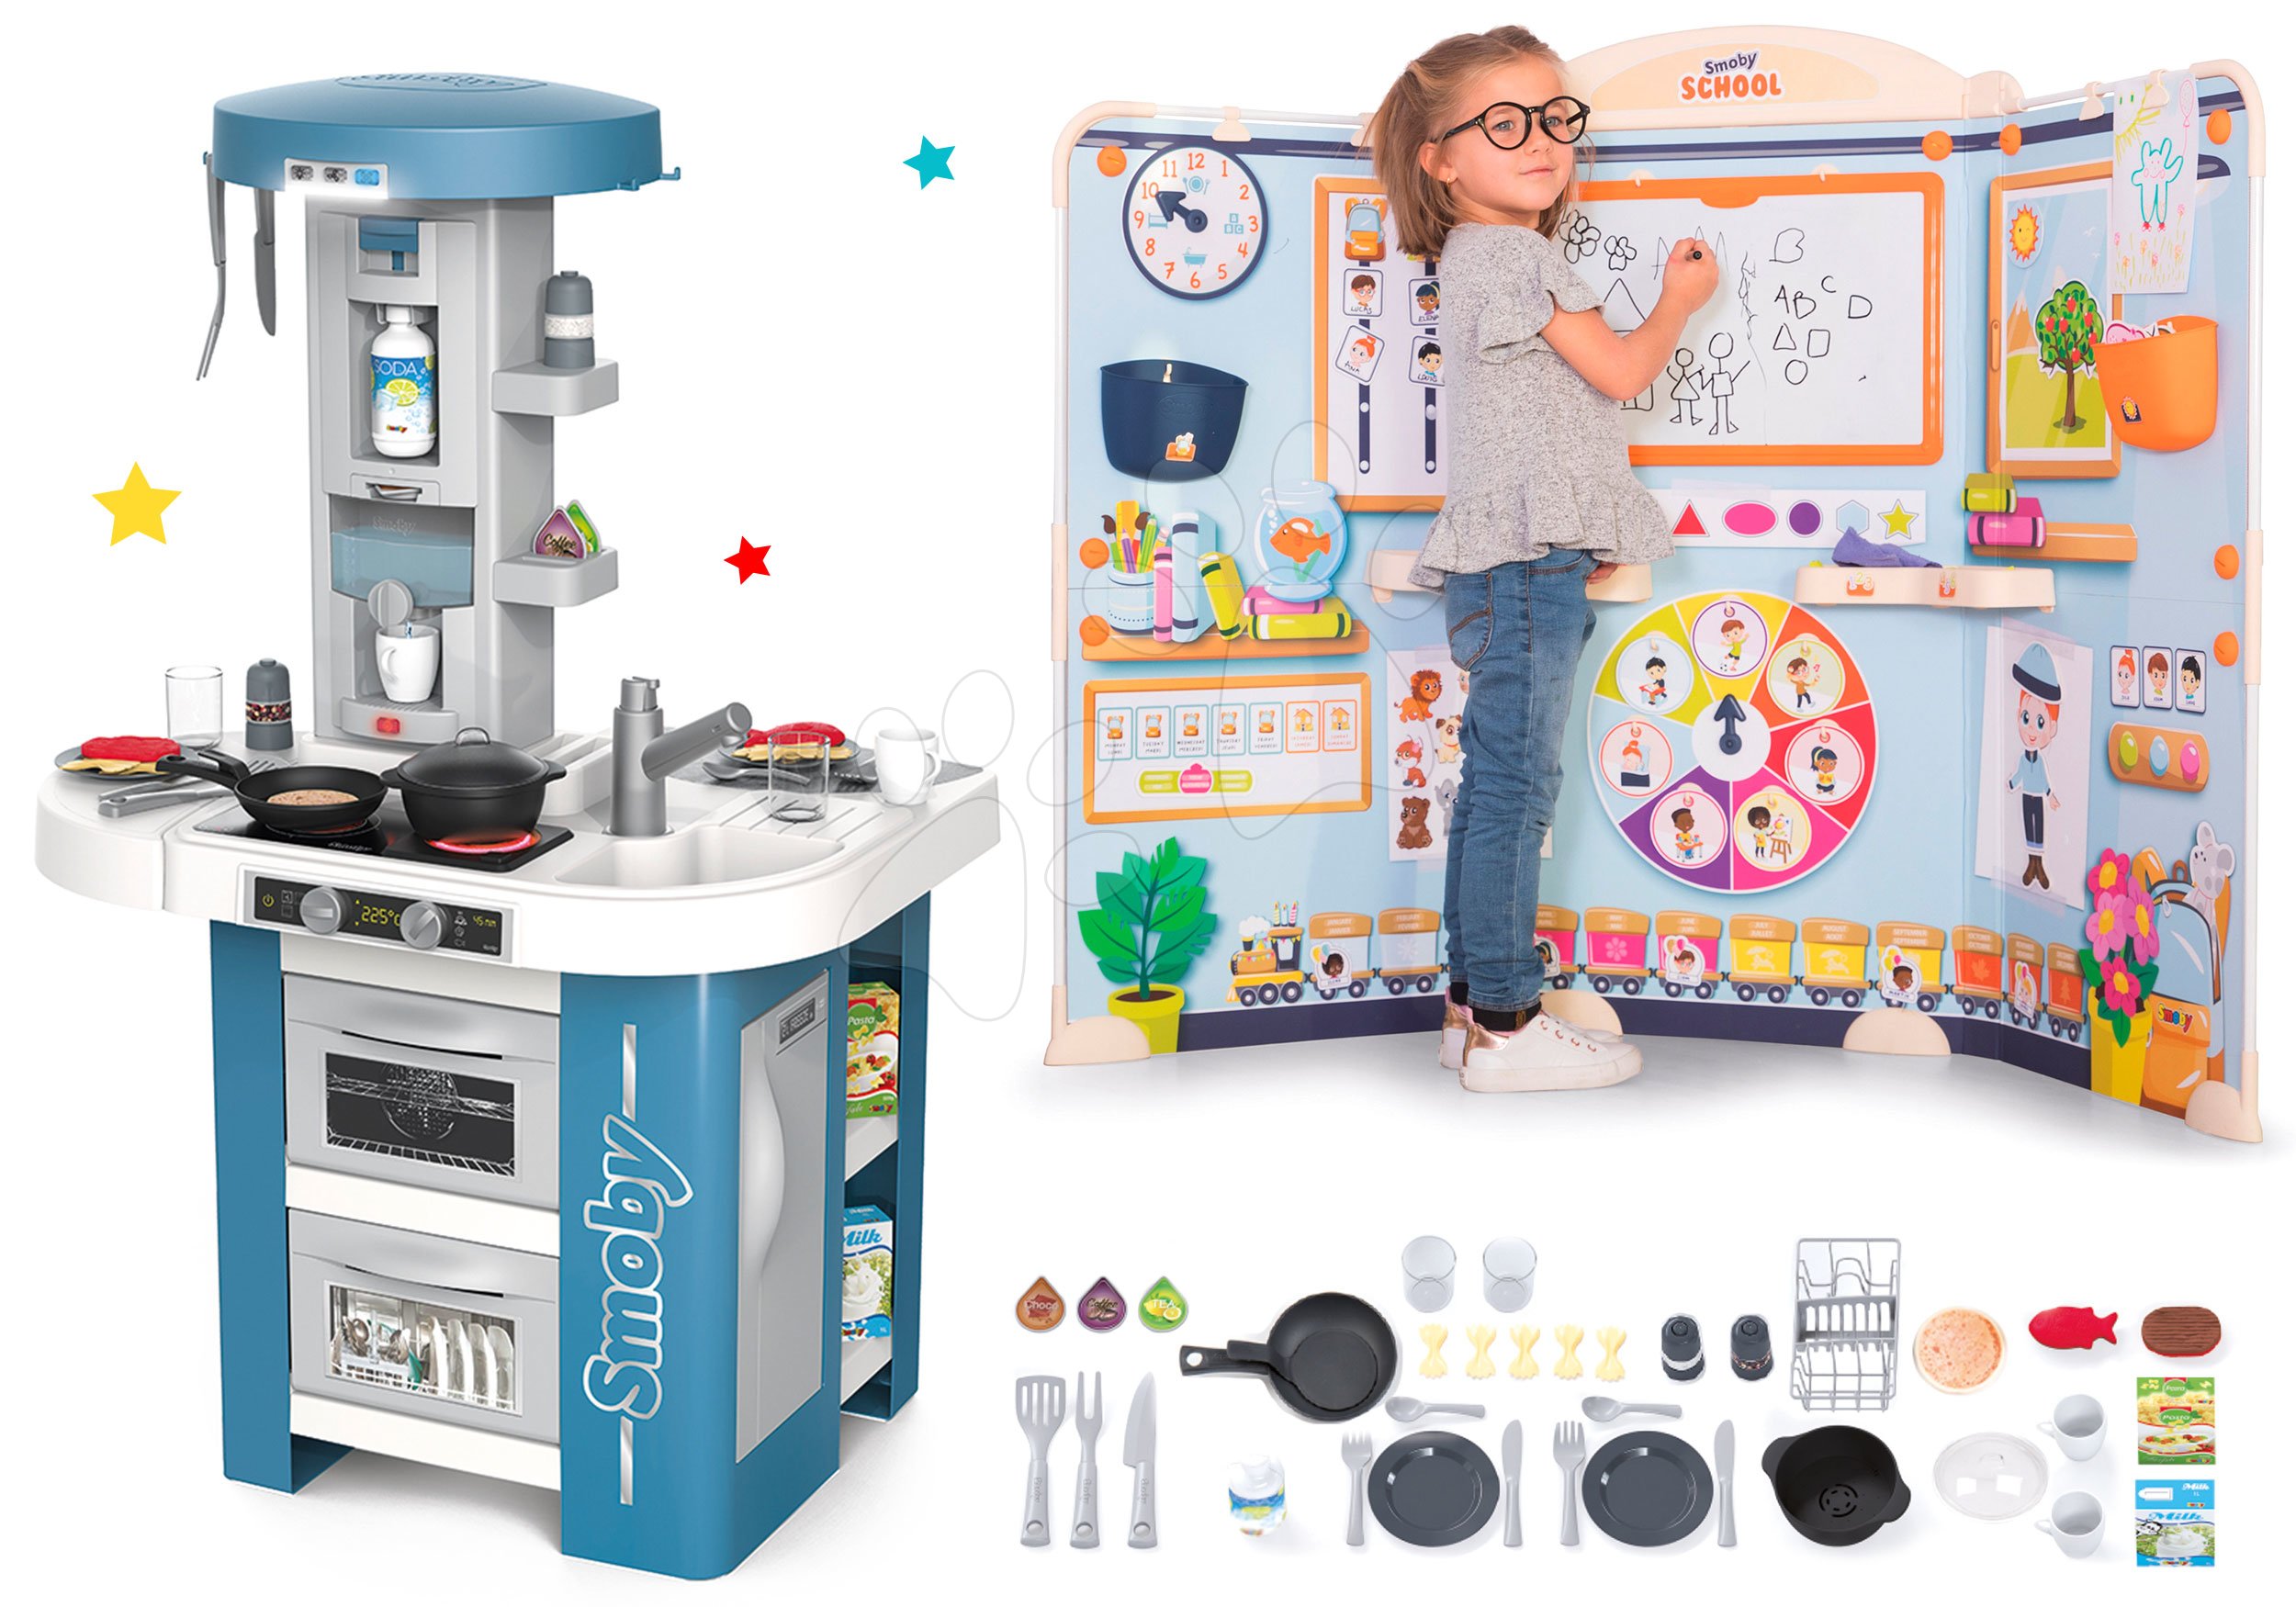 Set kuchyňka s technickým vybavením Tech Edition Smoby elektronická se školou pro předškoláky Hra na učitele a žáka